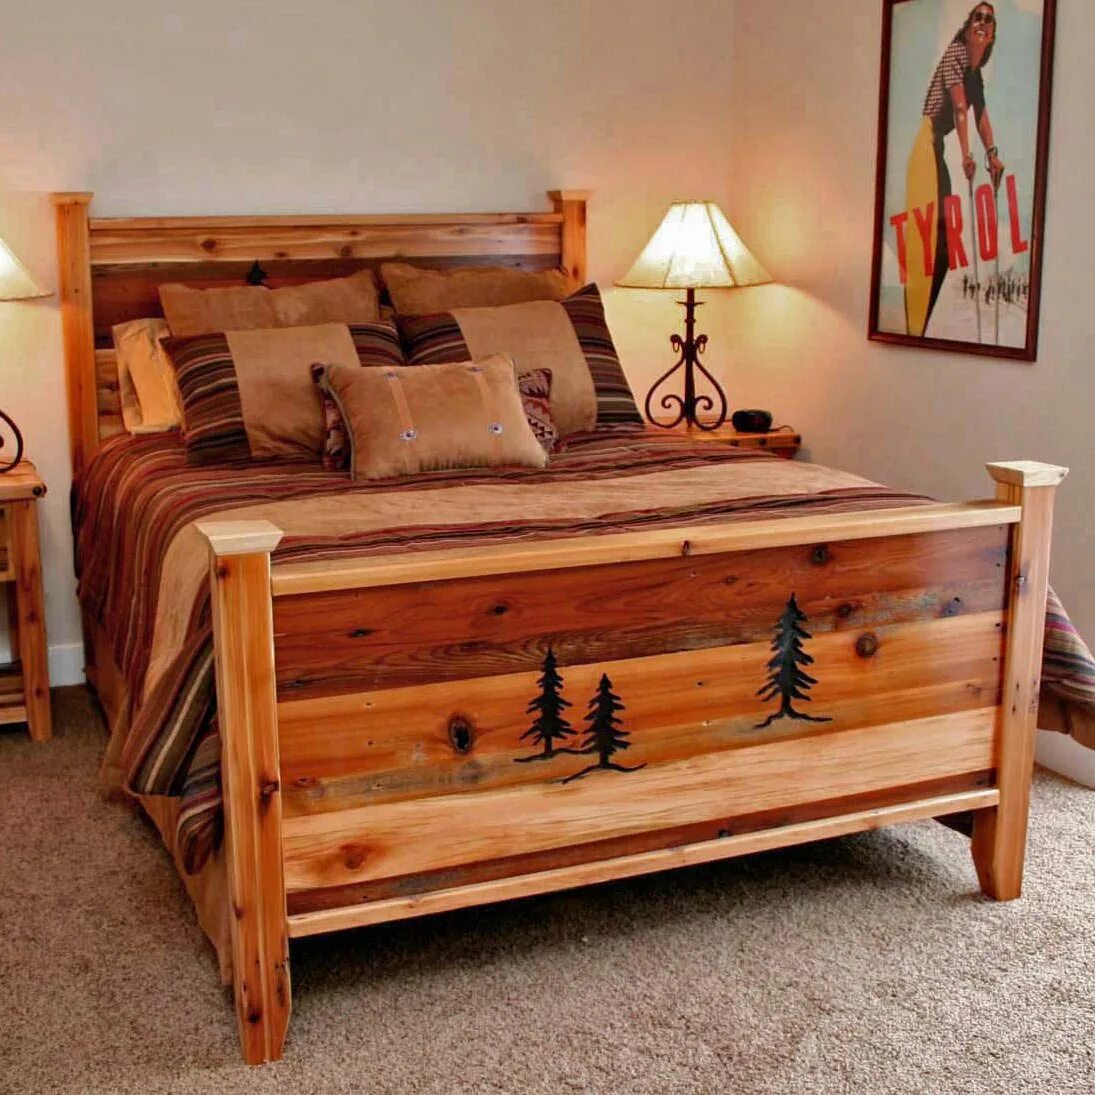 Кровать подростковая «Wooden Bed-2». Спальня рустикальный стиль деревянная мебель. Кровать в деревенском стиле. Wooden мебель